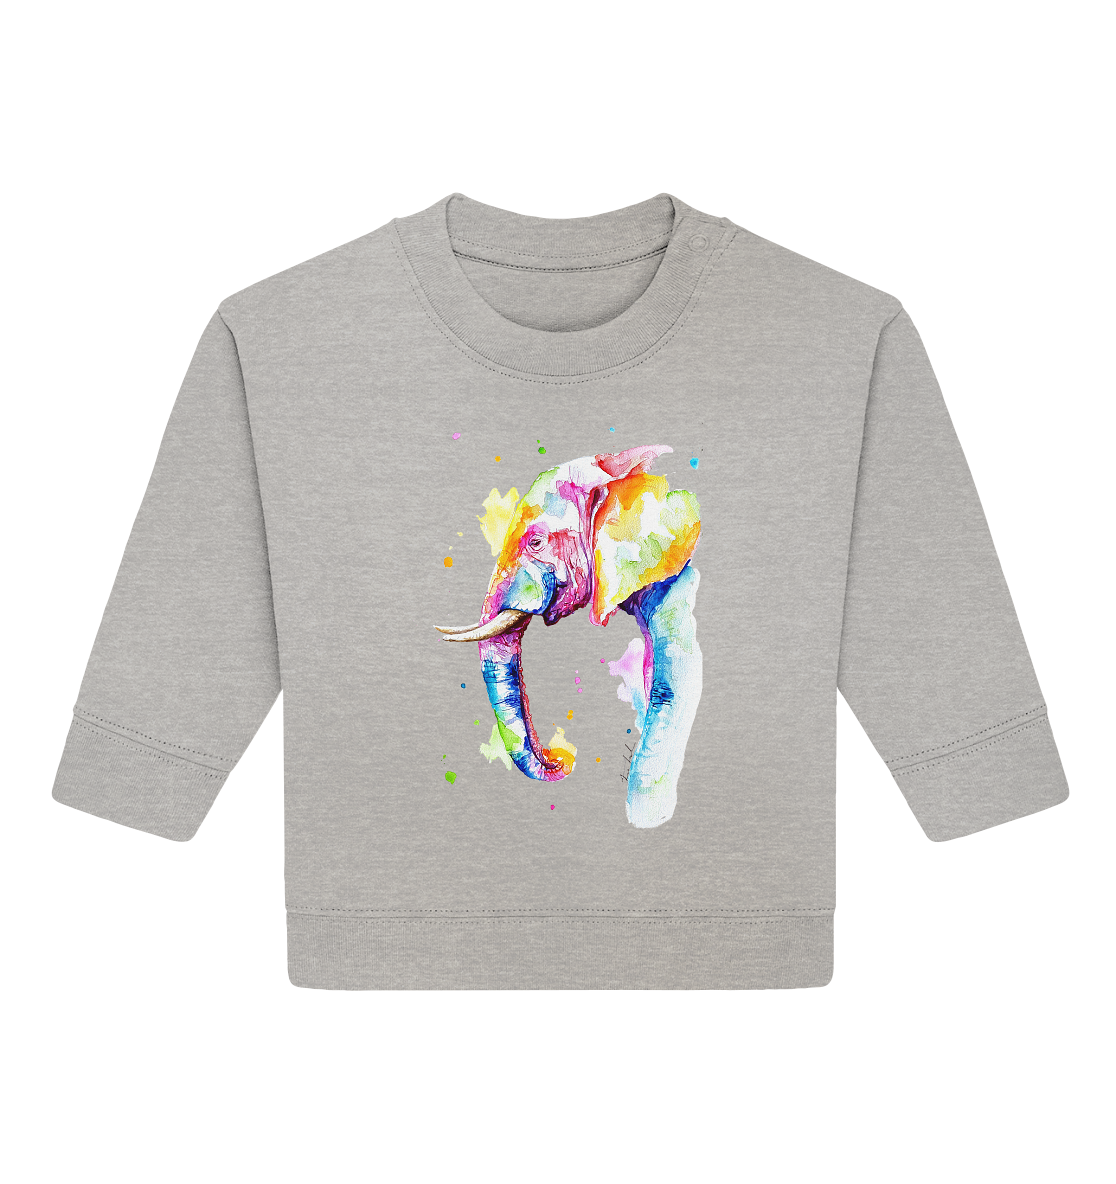 Bunter Elefant - Baby Organic Sweatshirt